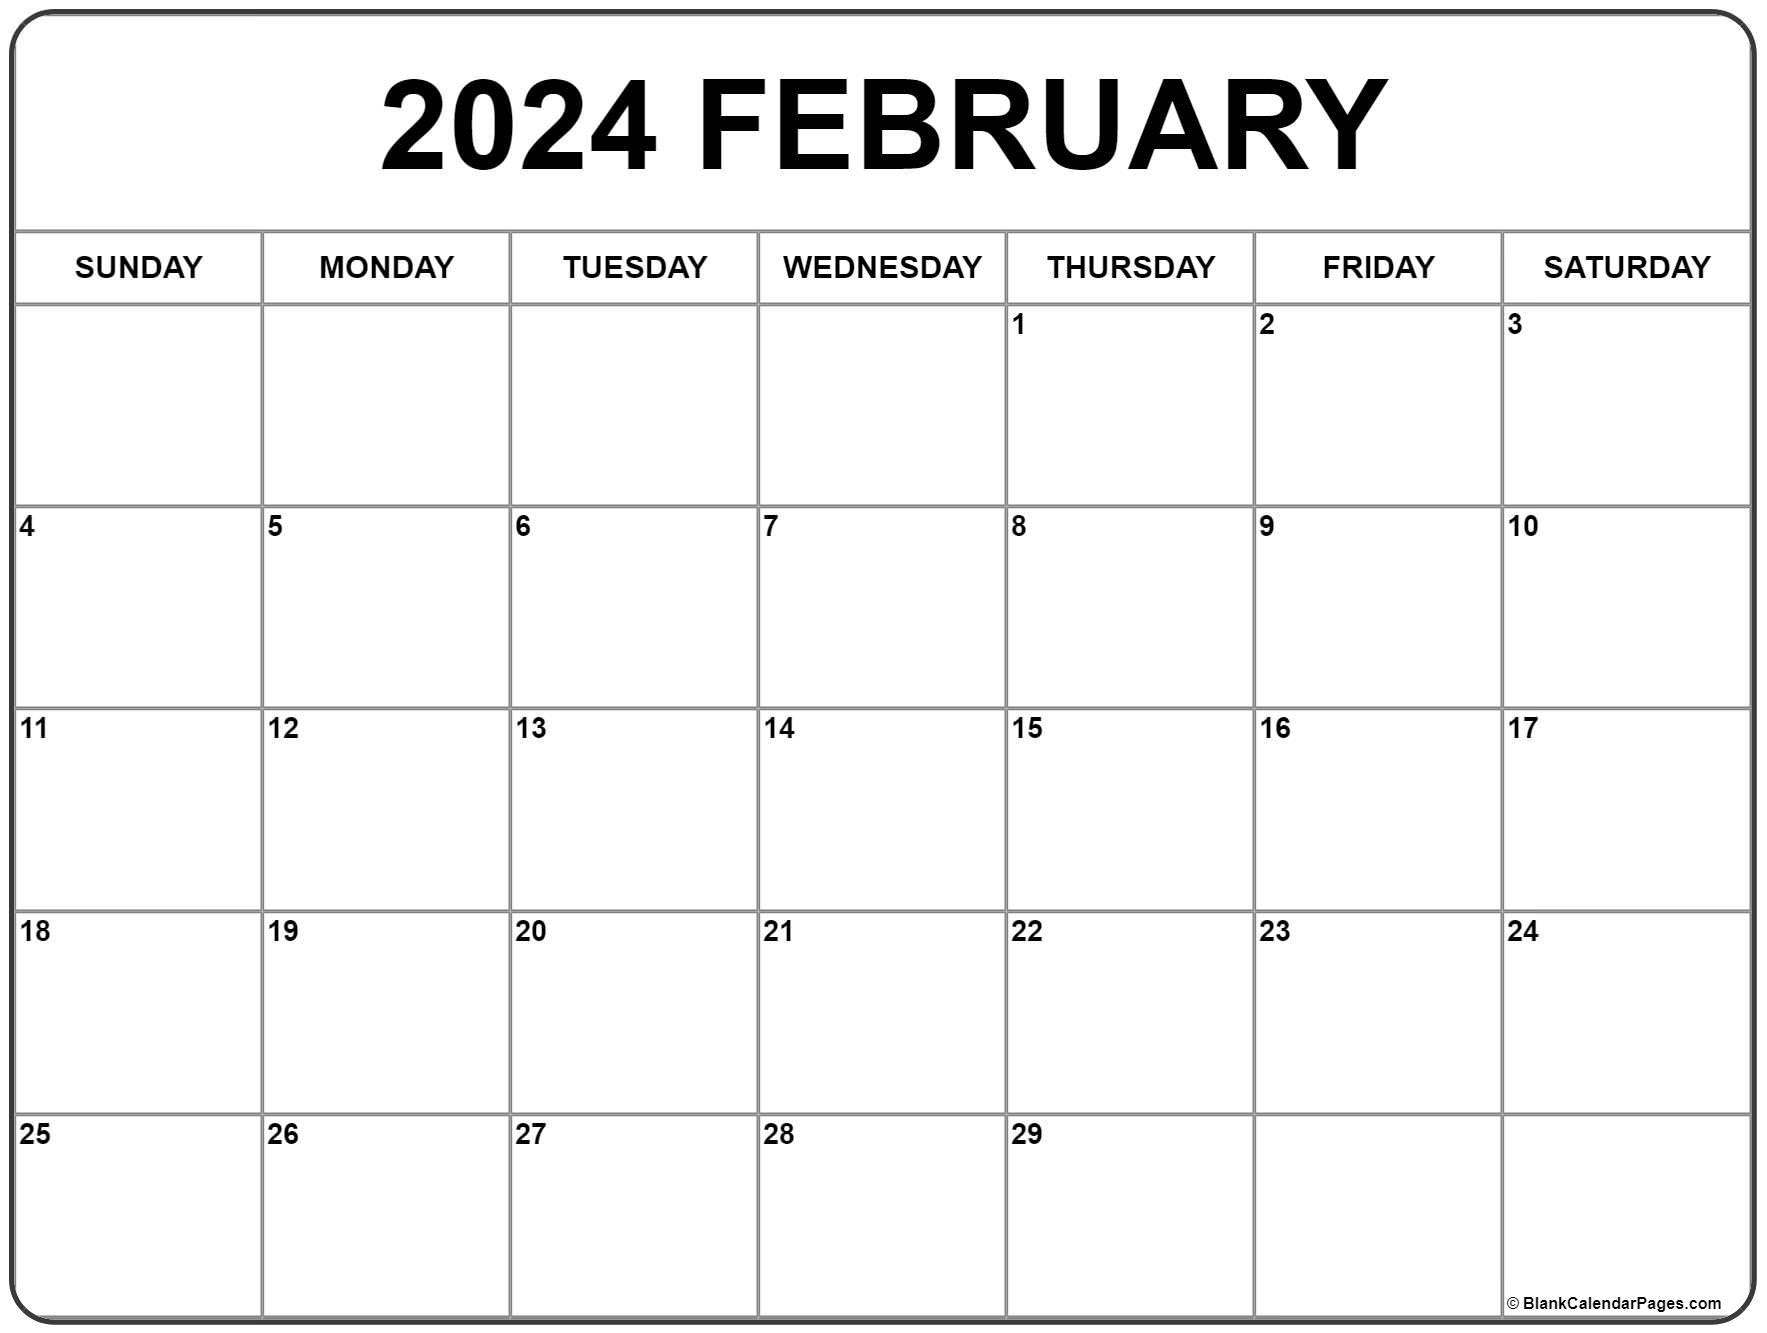 2021 Calendar February February 2021 calendar | free printable monthly calendars